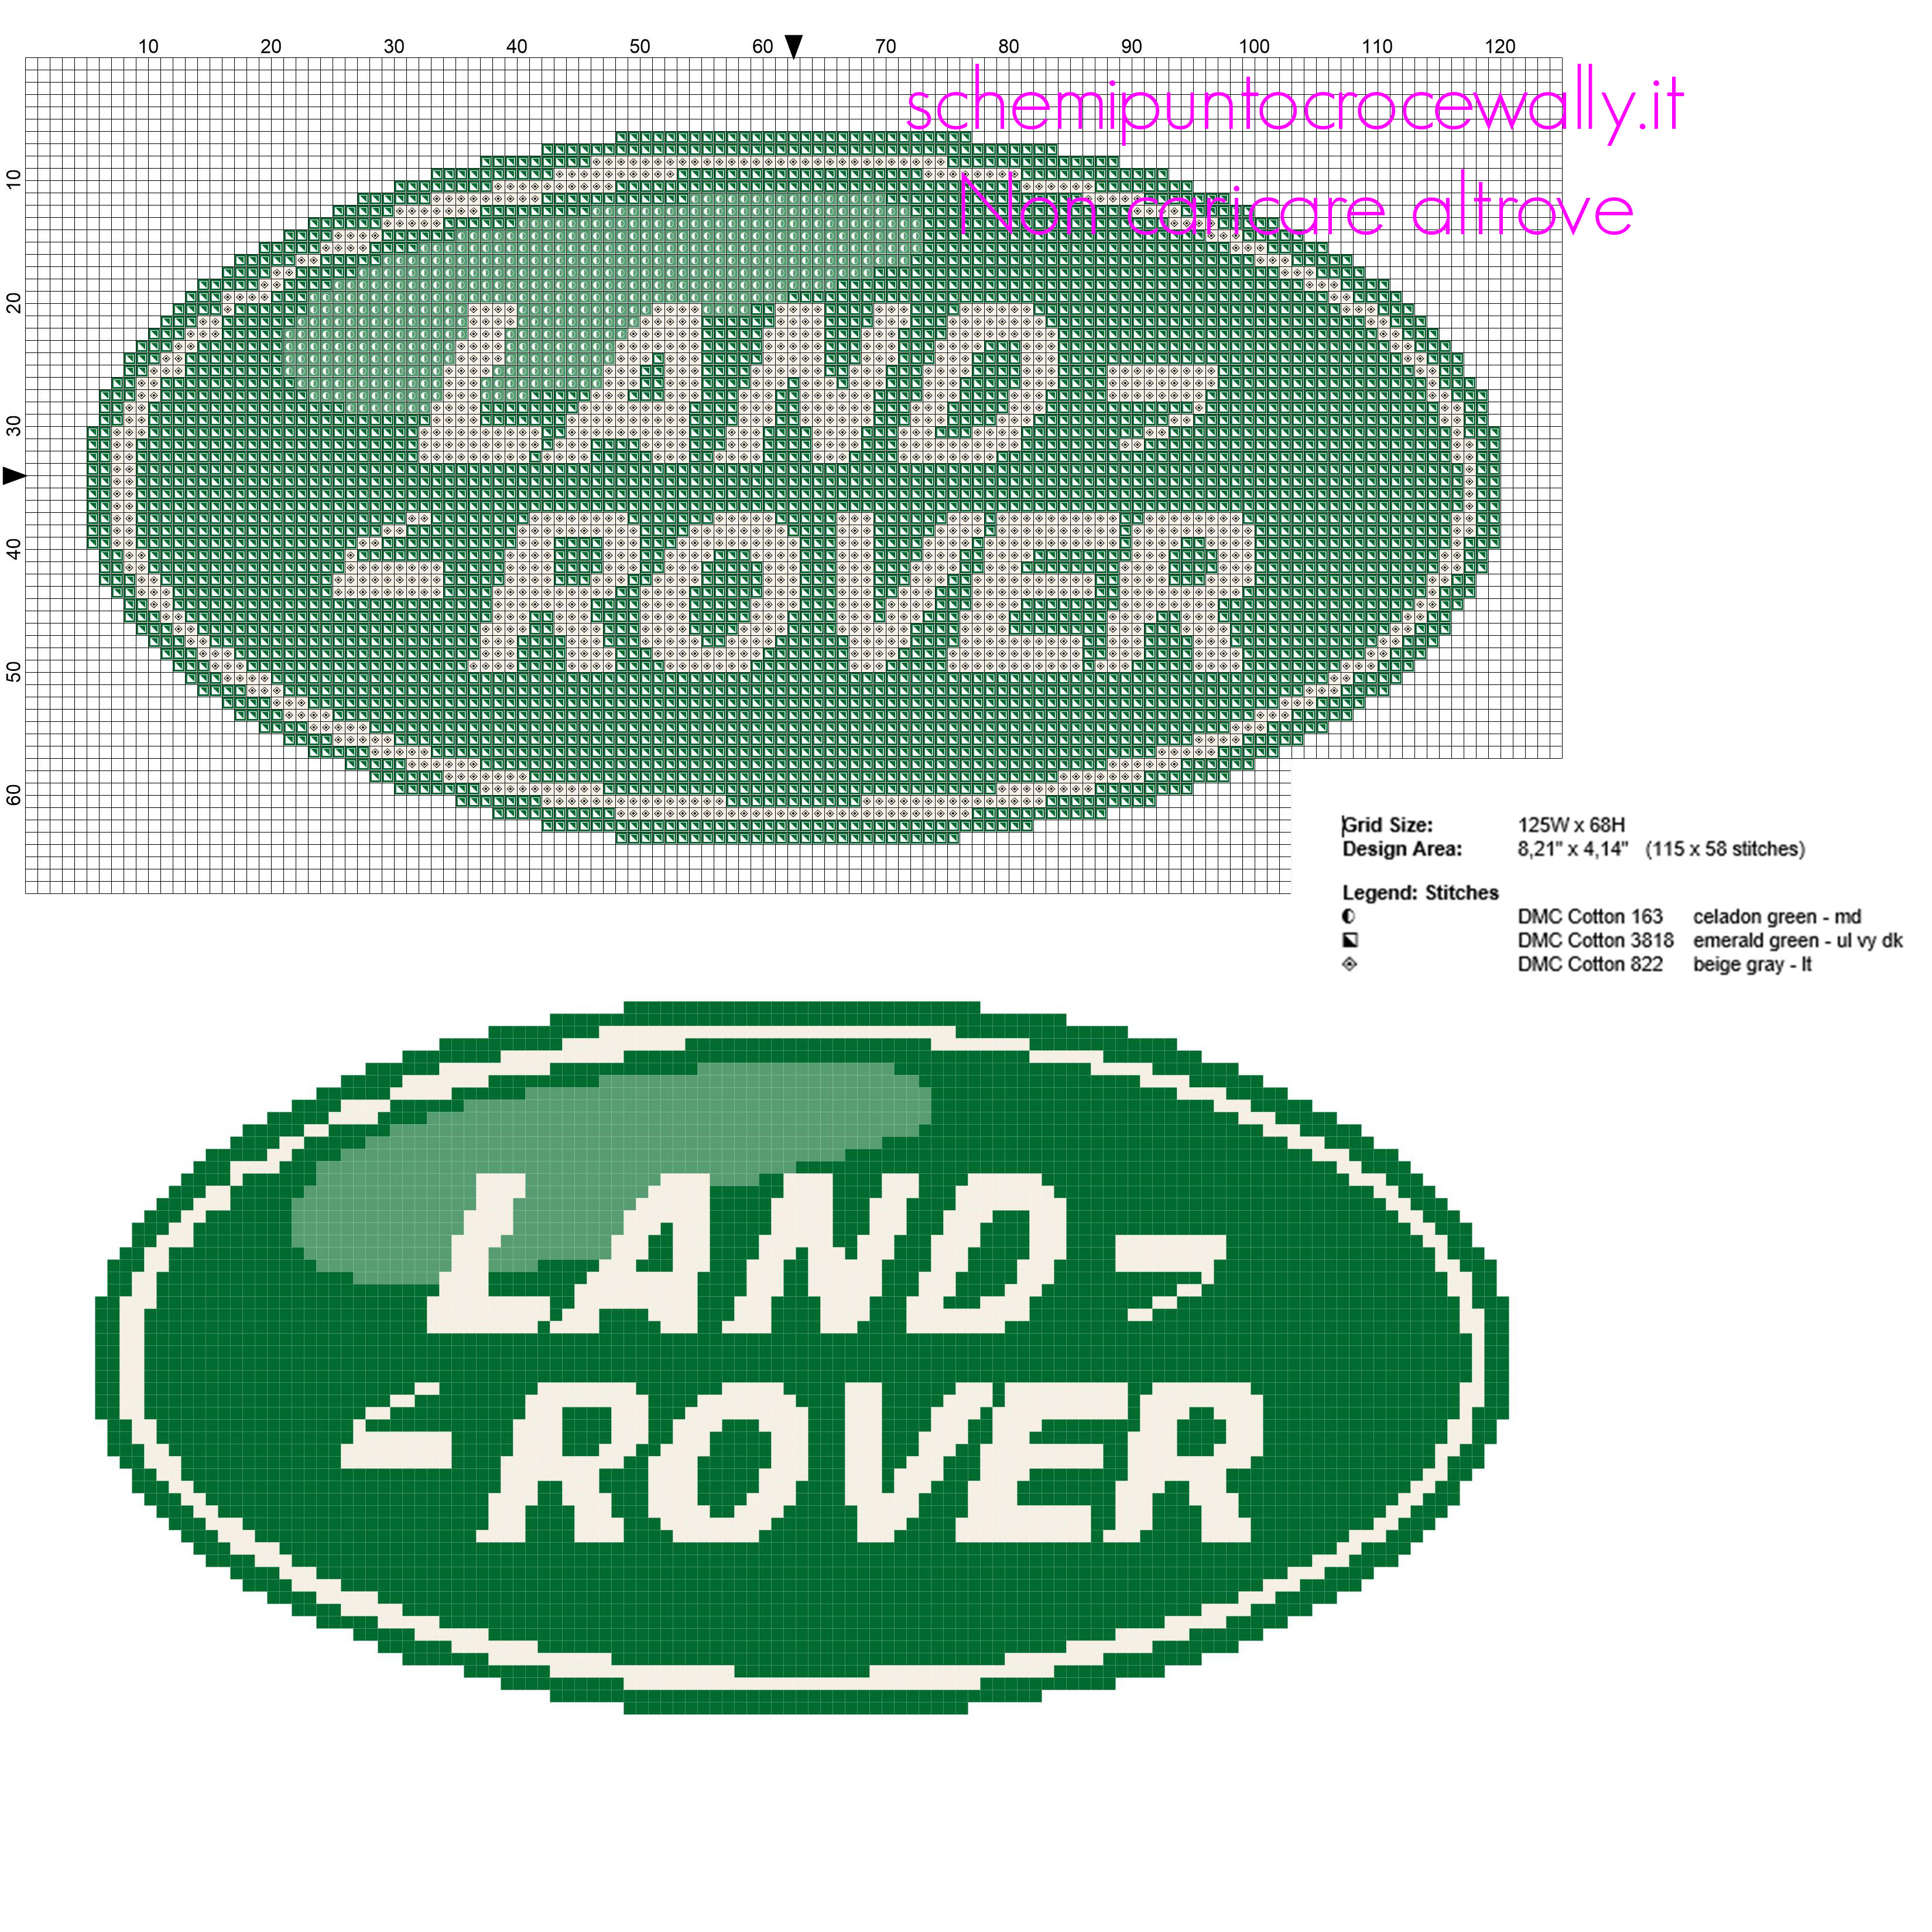 Logo delle automobili Land Rover schema punto croce download gratuito